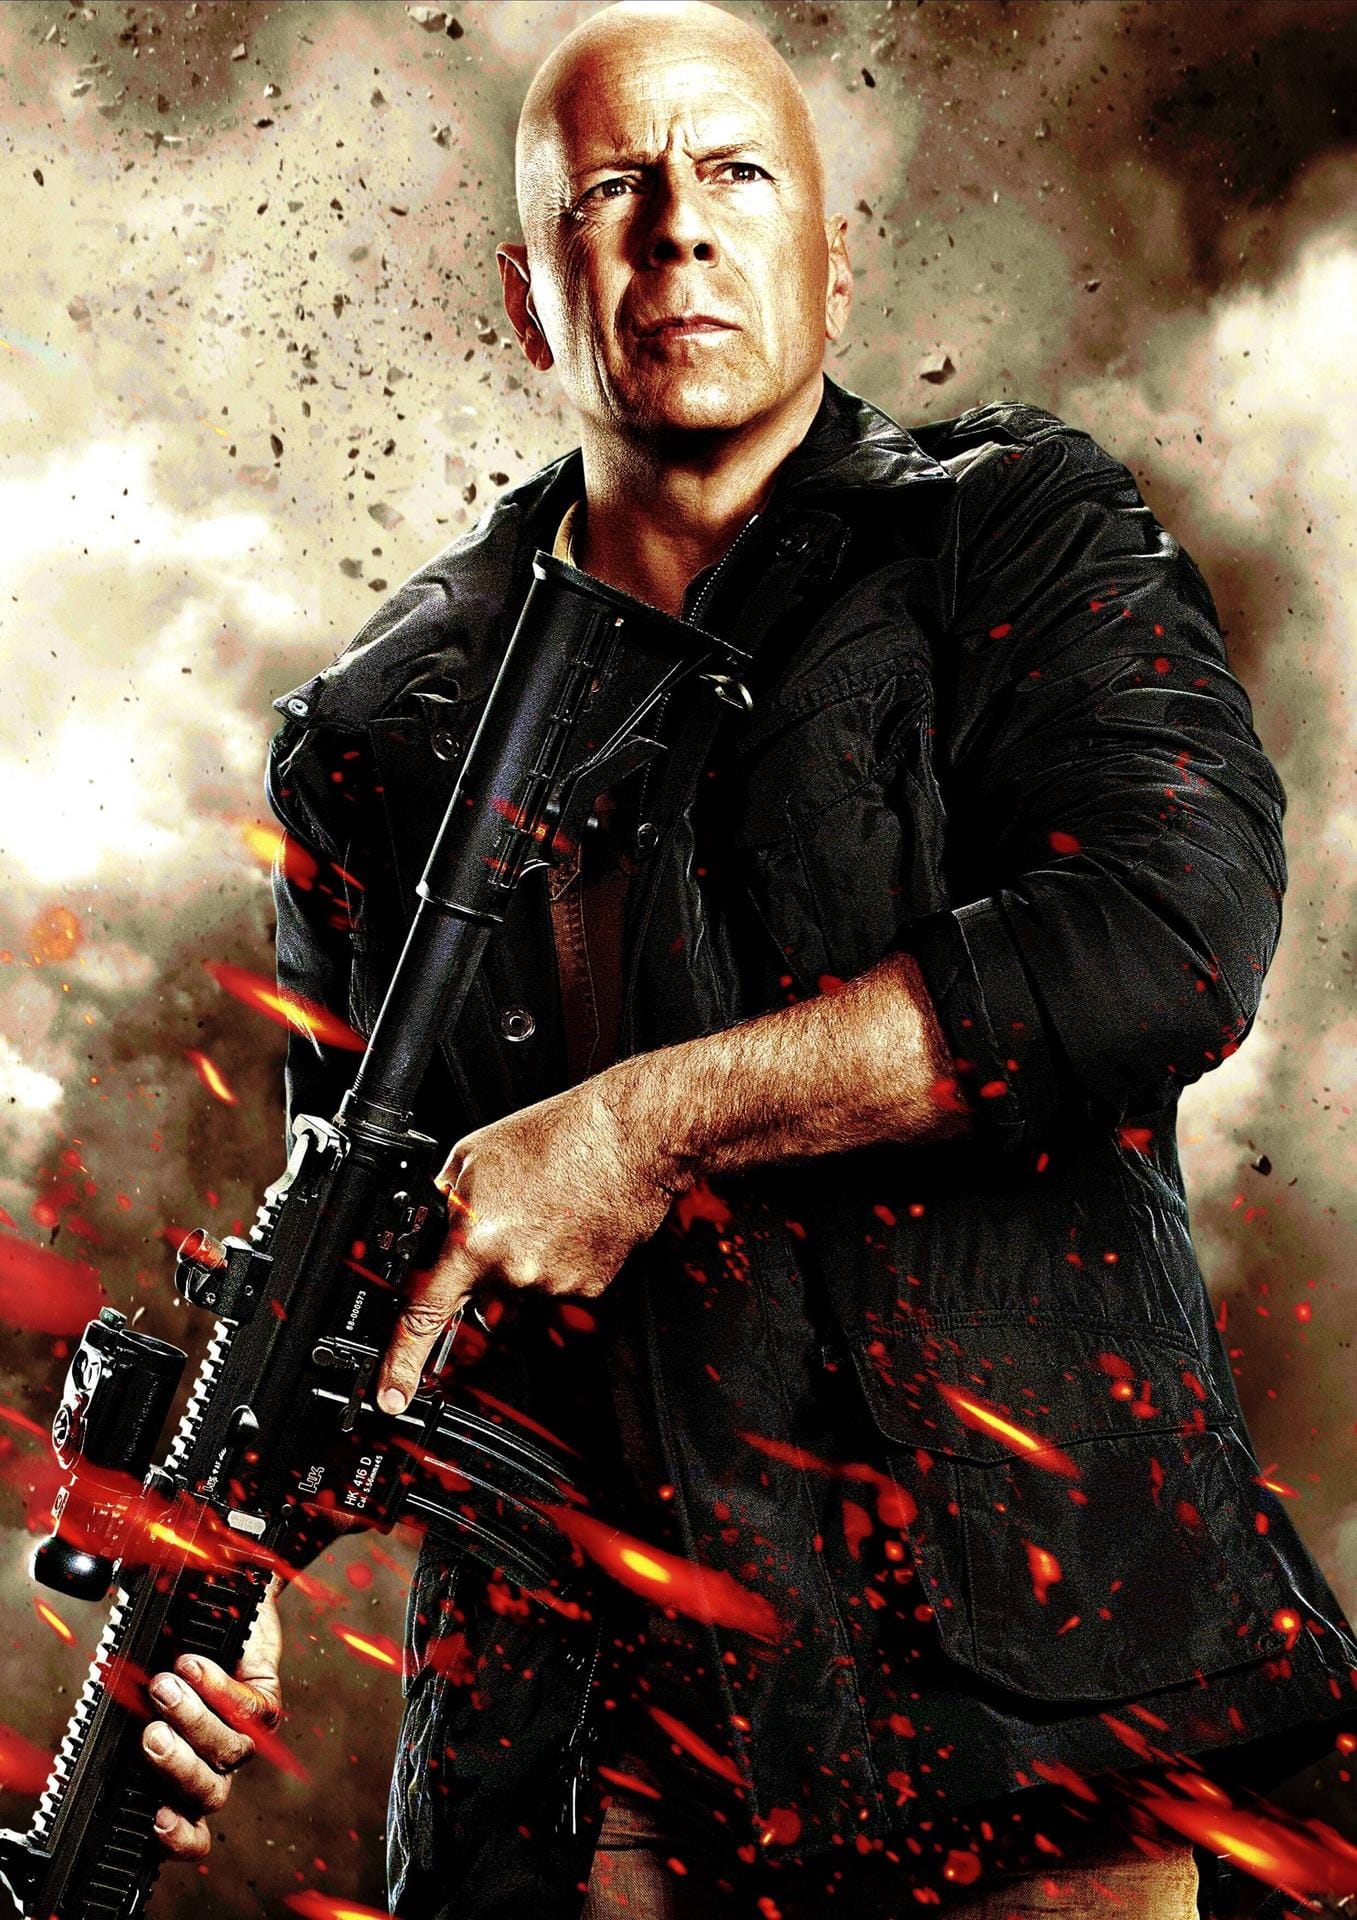 "The Expendables 2" (2010): In der Filmreihe war Bruce Willis Mr. Church. Bereits im ersten Teil hatte er einen kurzen Cameoauftritt in dieser Rolle.